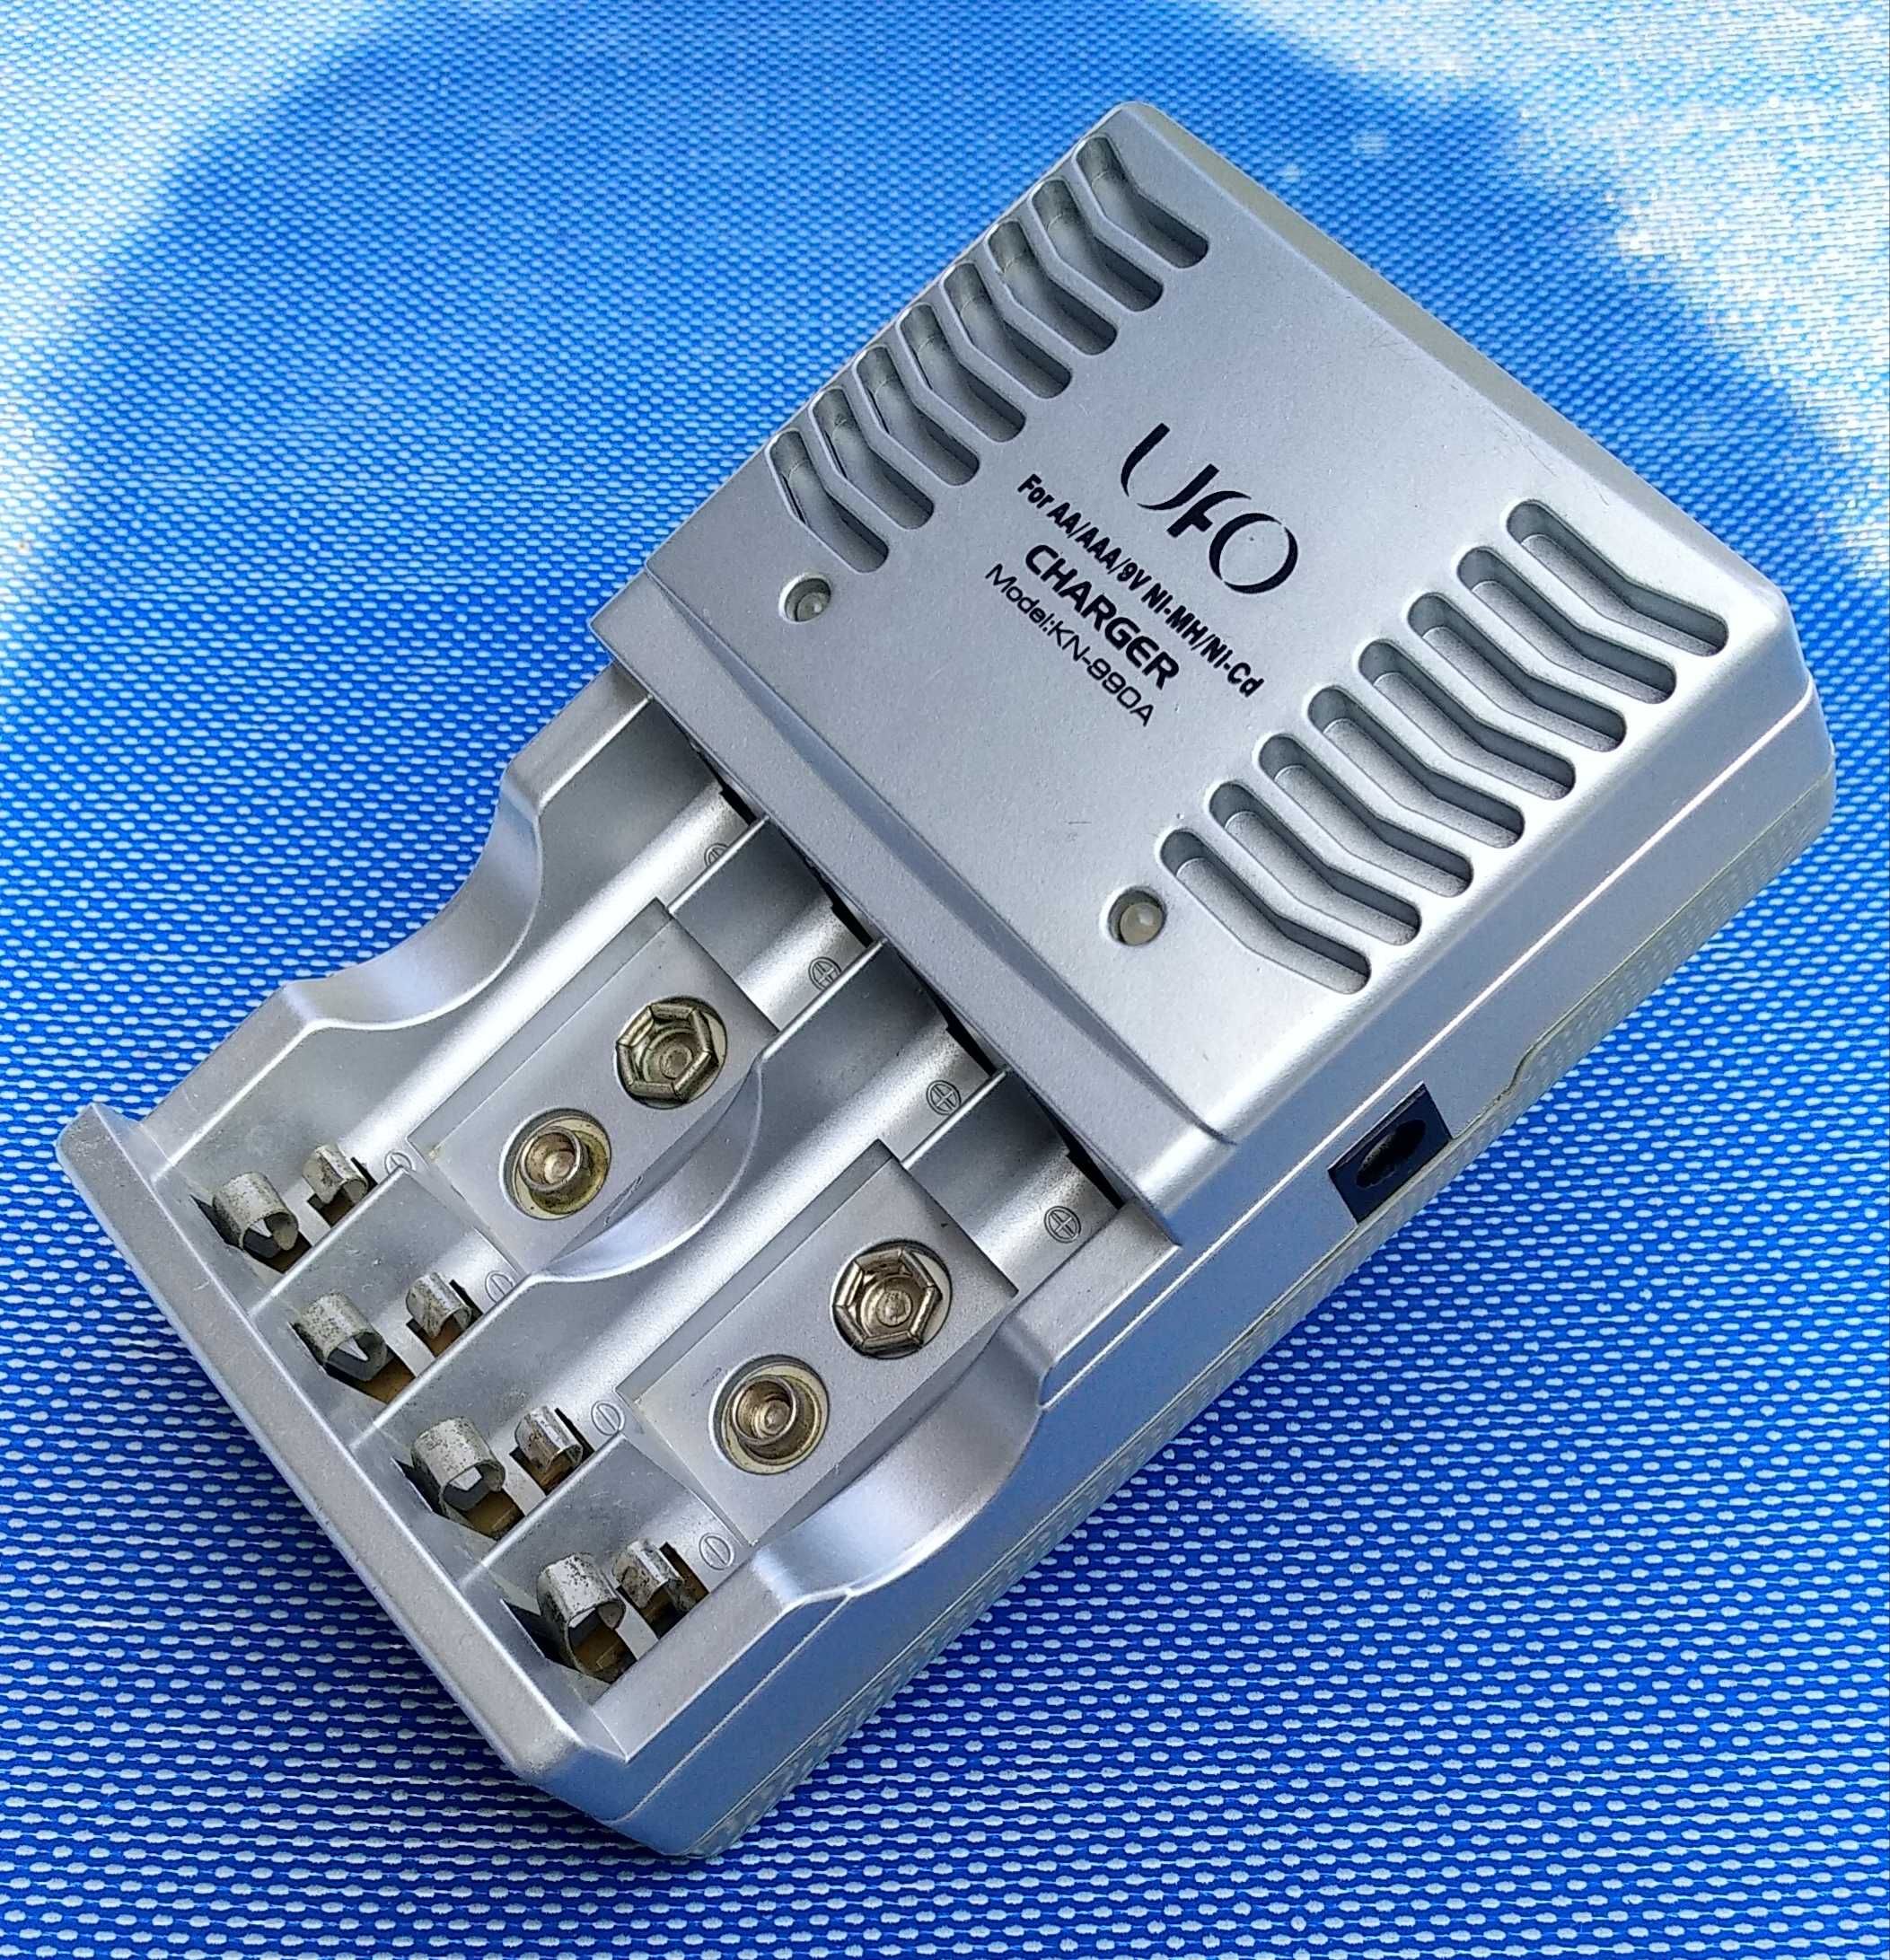 Зарядное устройство для NIMH-NiCd аккумуляторов UFO KN-990A